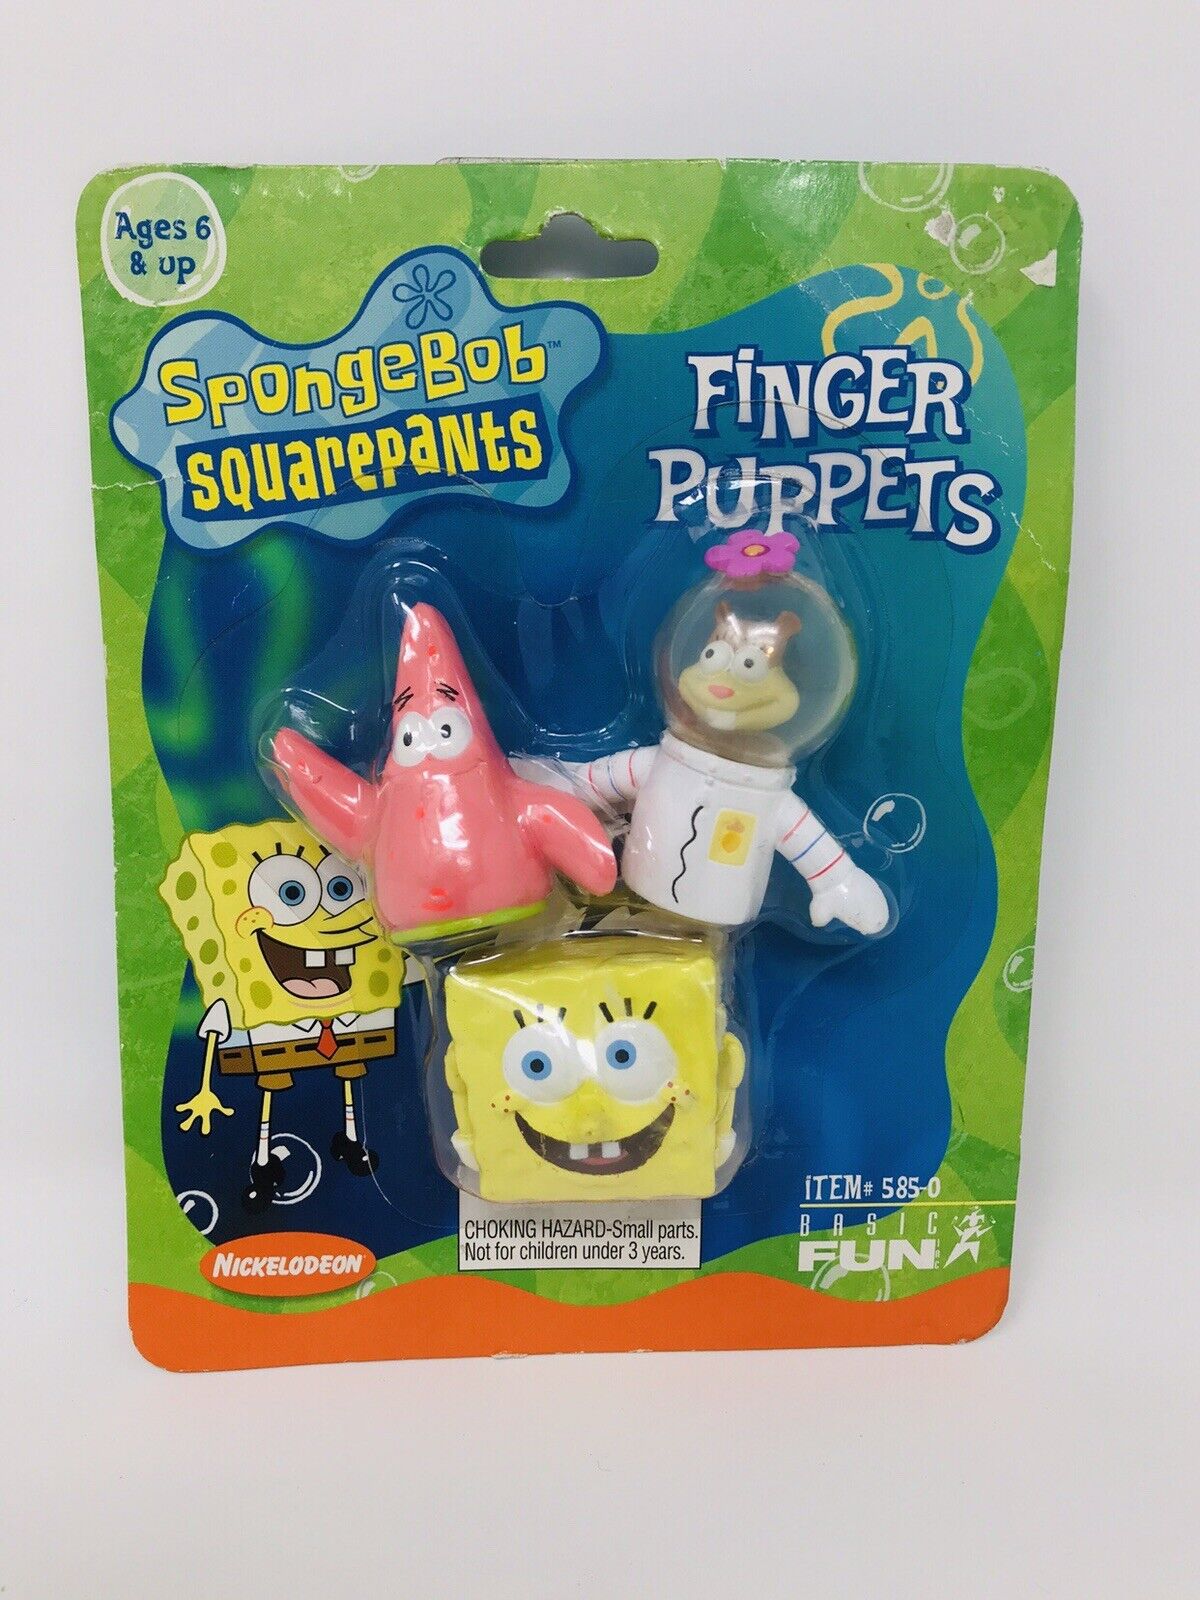 SpongeBob SquarePants Finger Puppets Basic Fun 2001